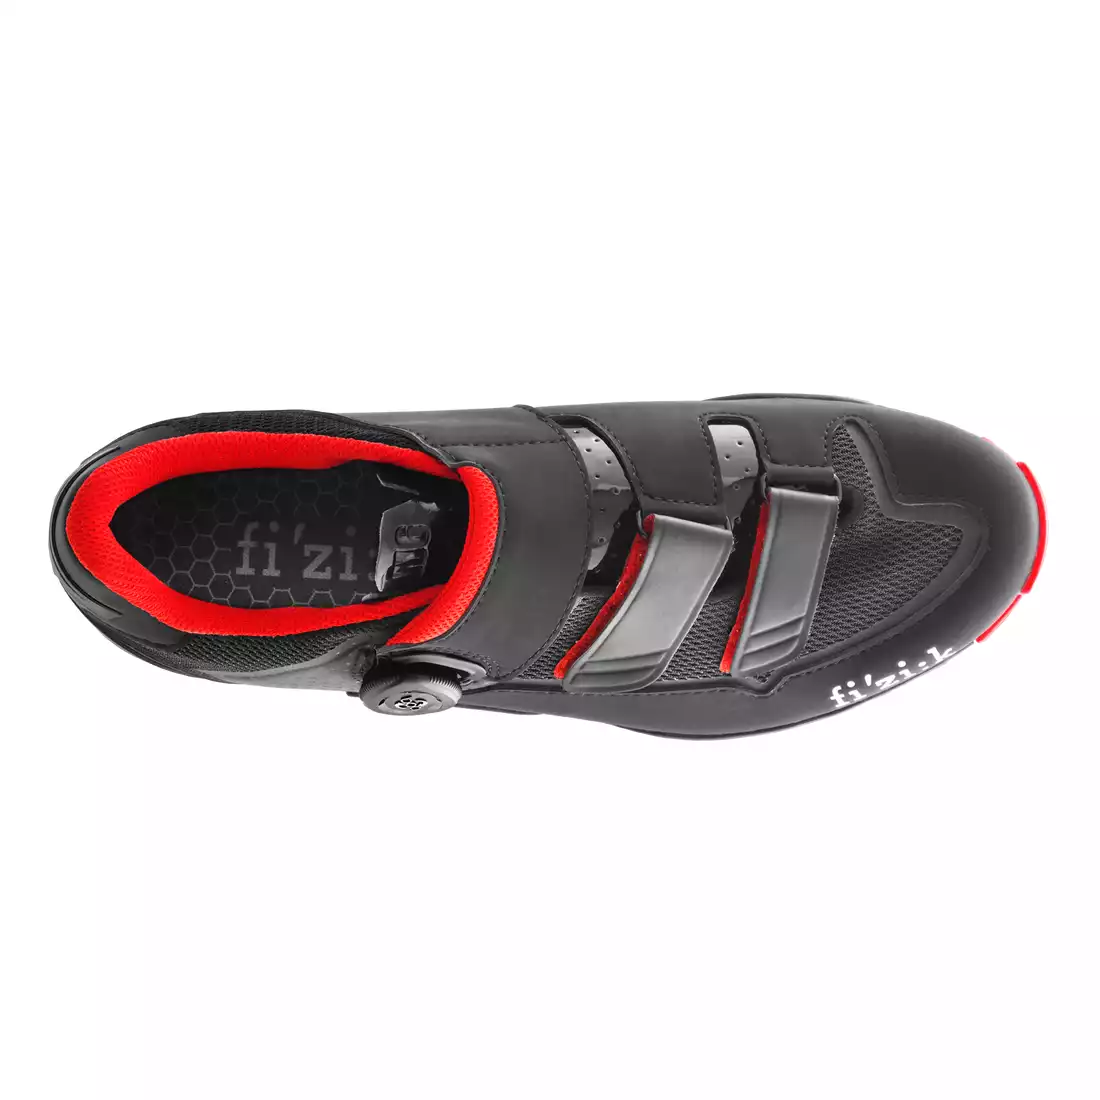 FIZIK X-ROAD M6 buty rowerowe MTB czarny czerwony